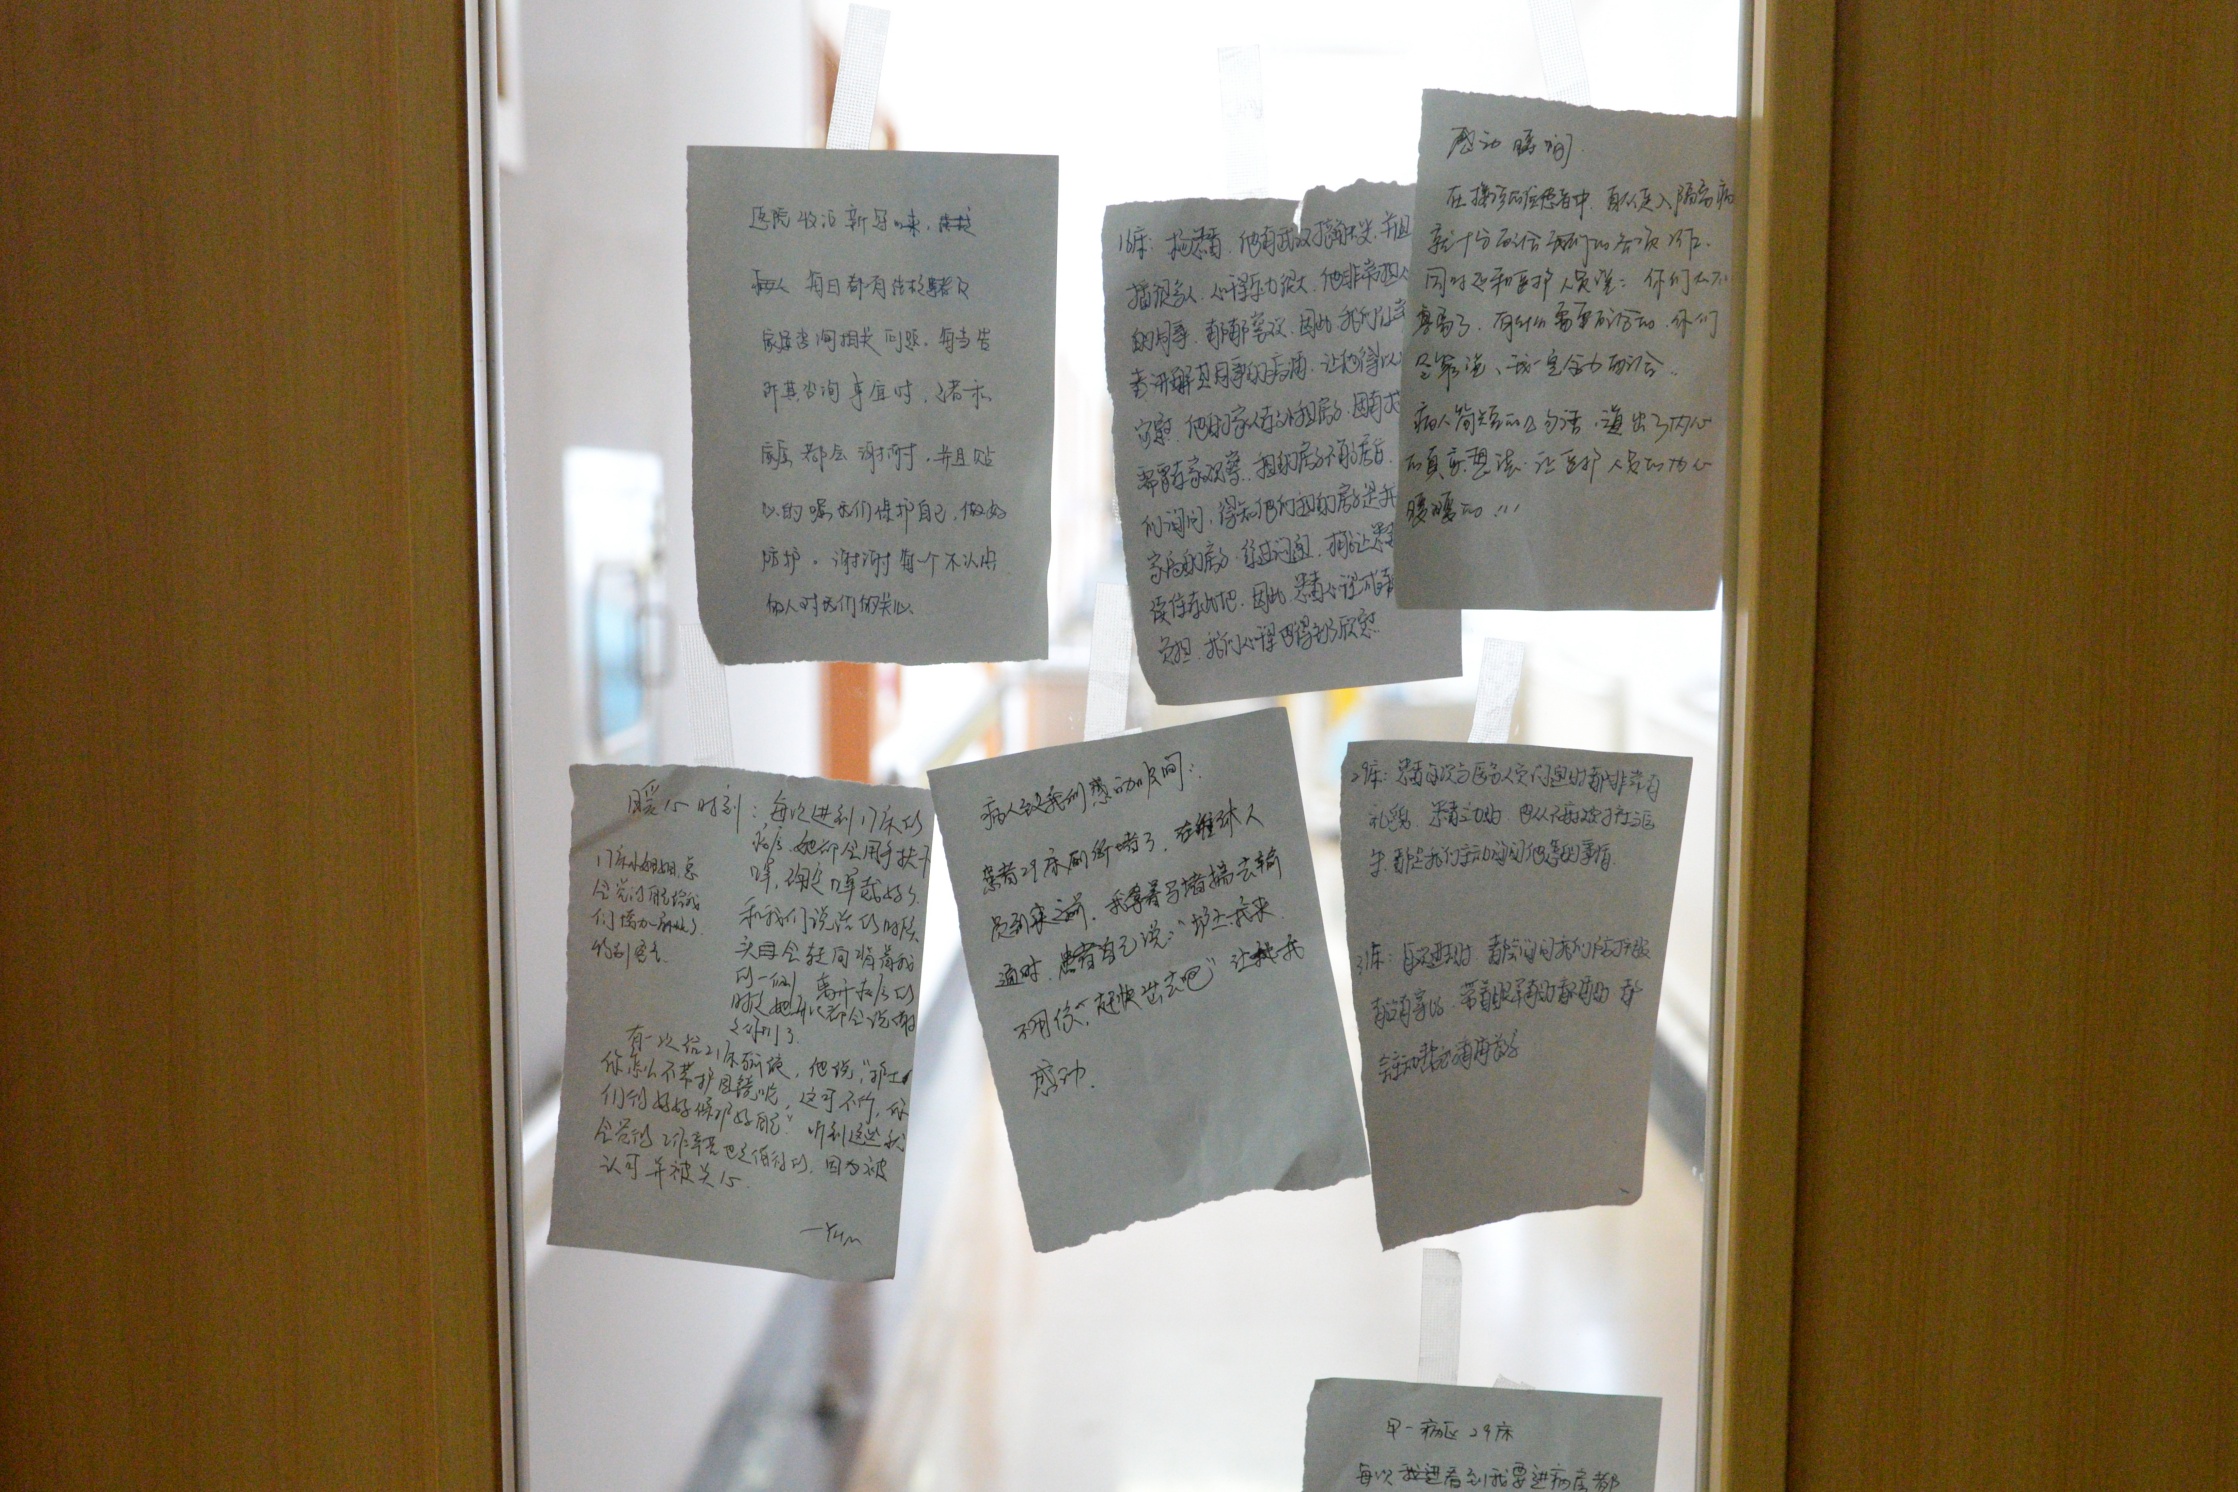 天津海河醫院隔離病房前傳遞溫暖與感動的u小紙條vA採訪者供圖C